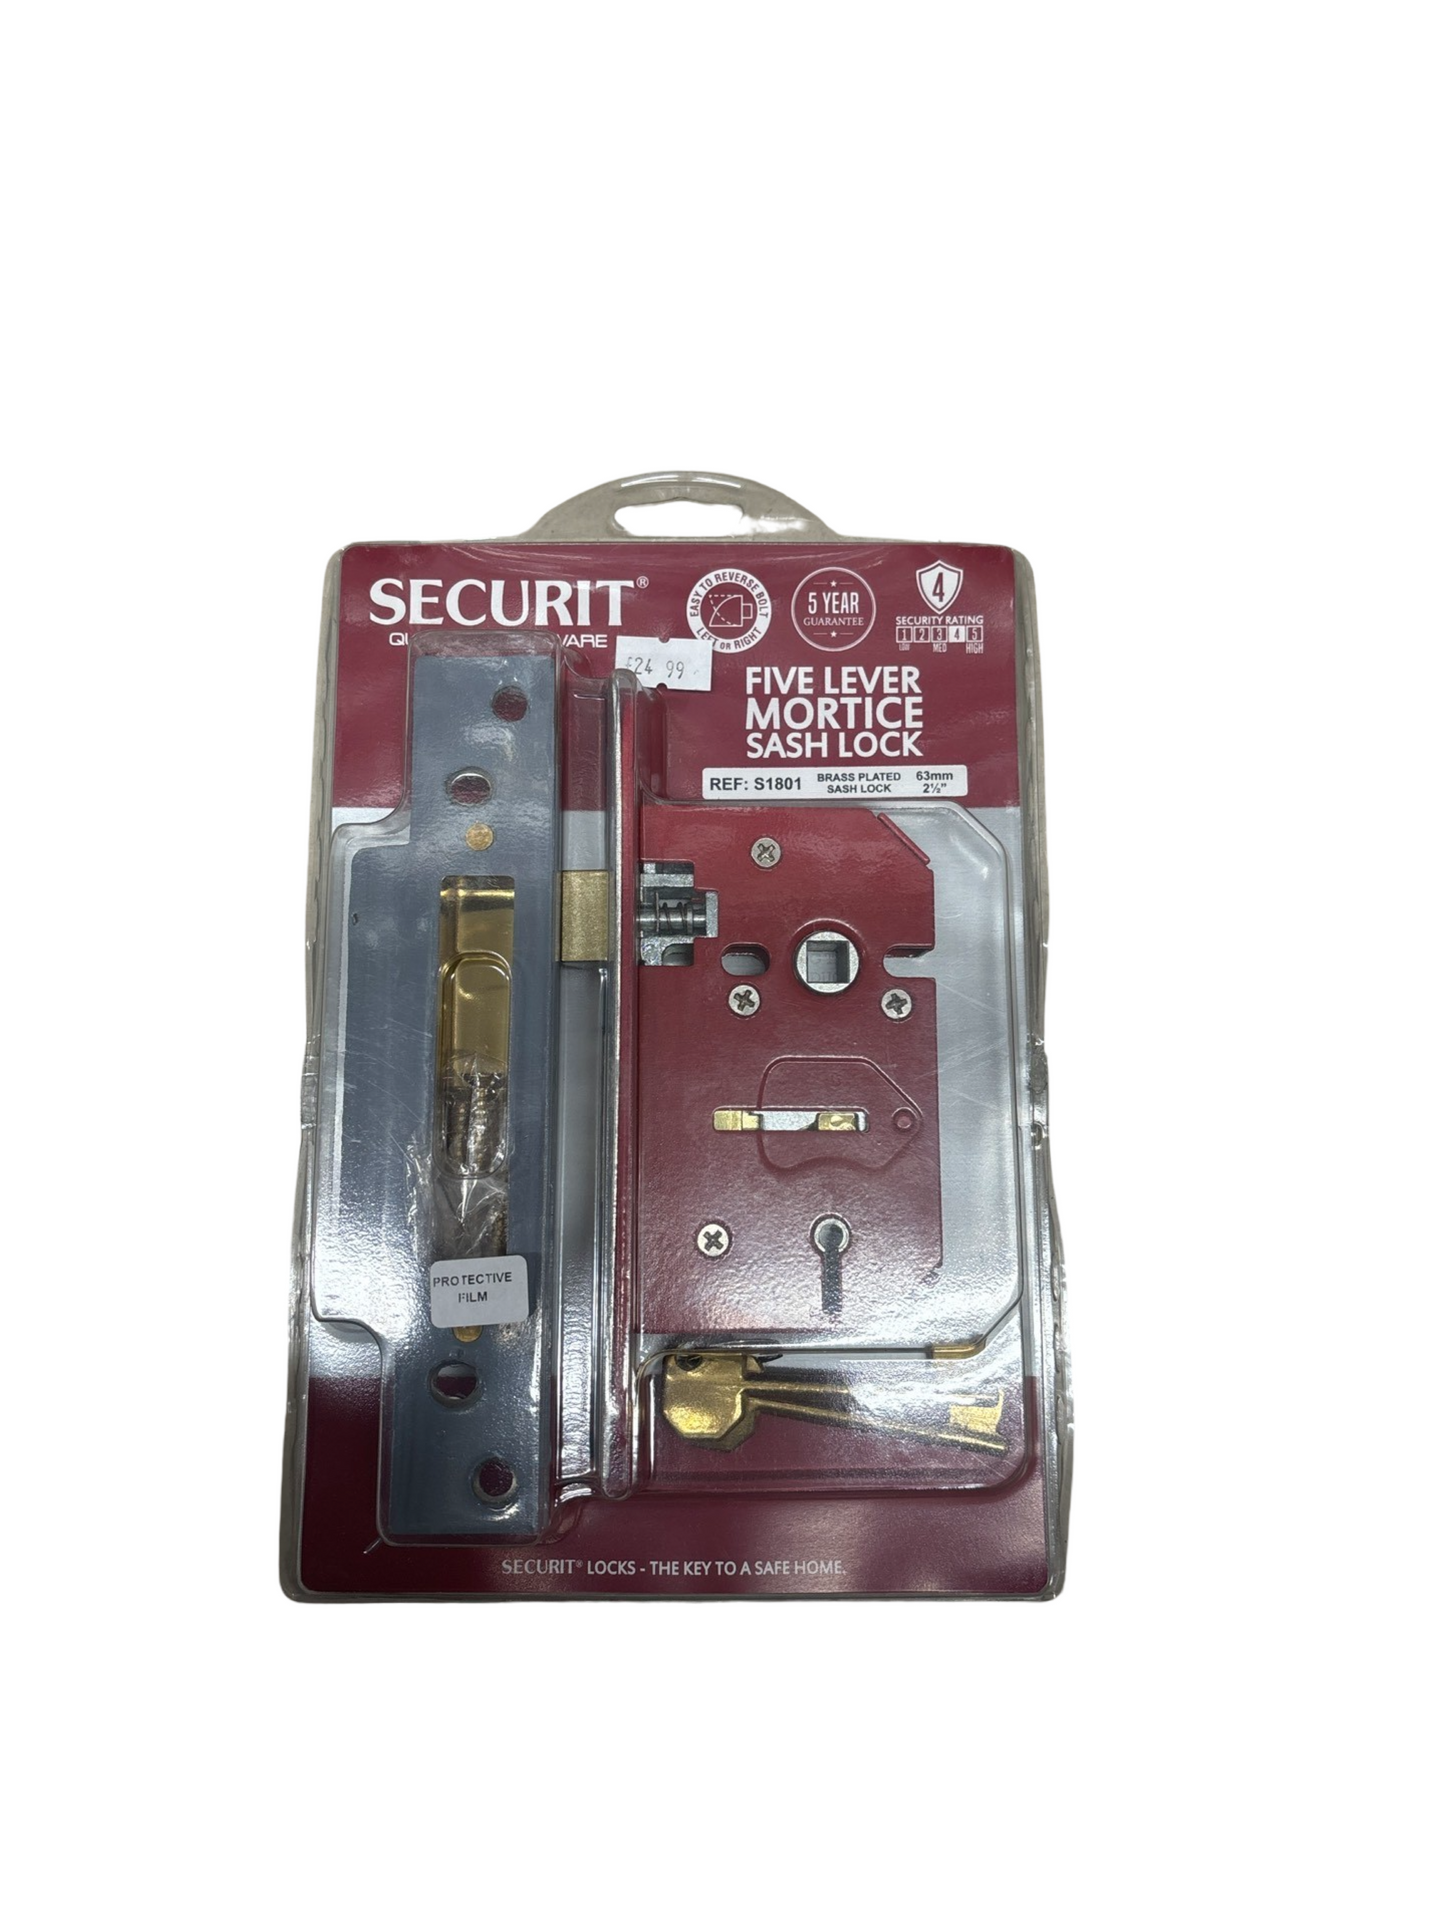 Five lever mortice sash lock